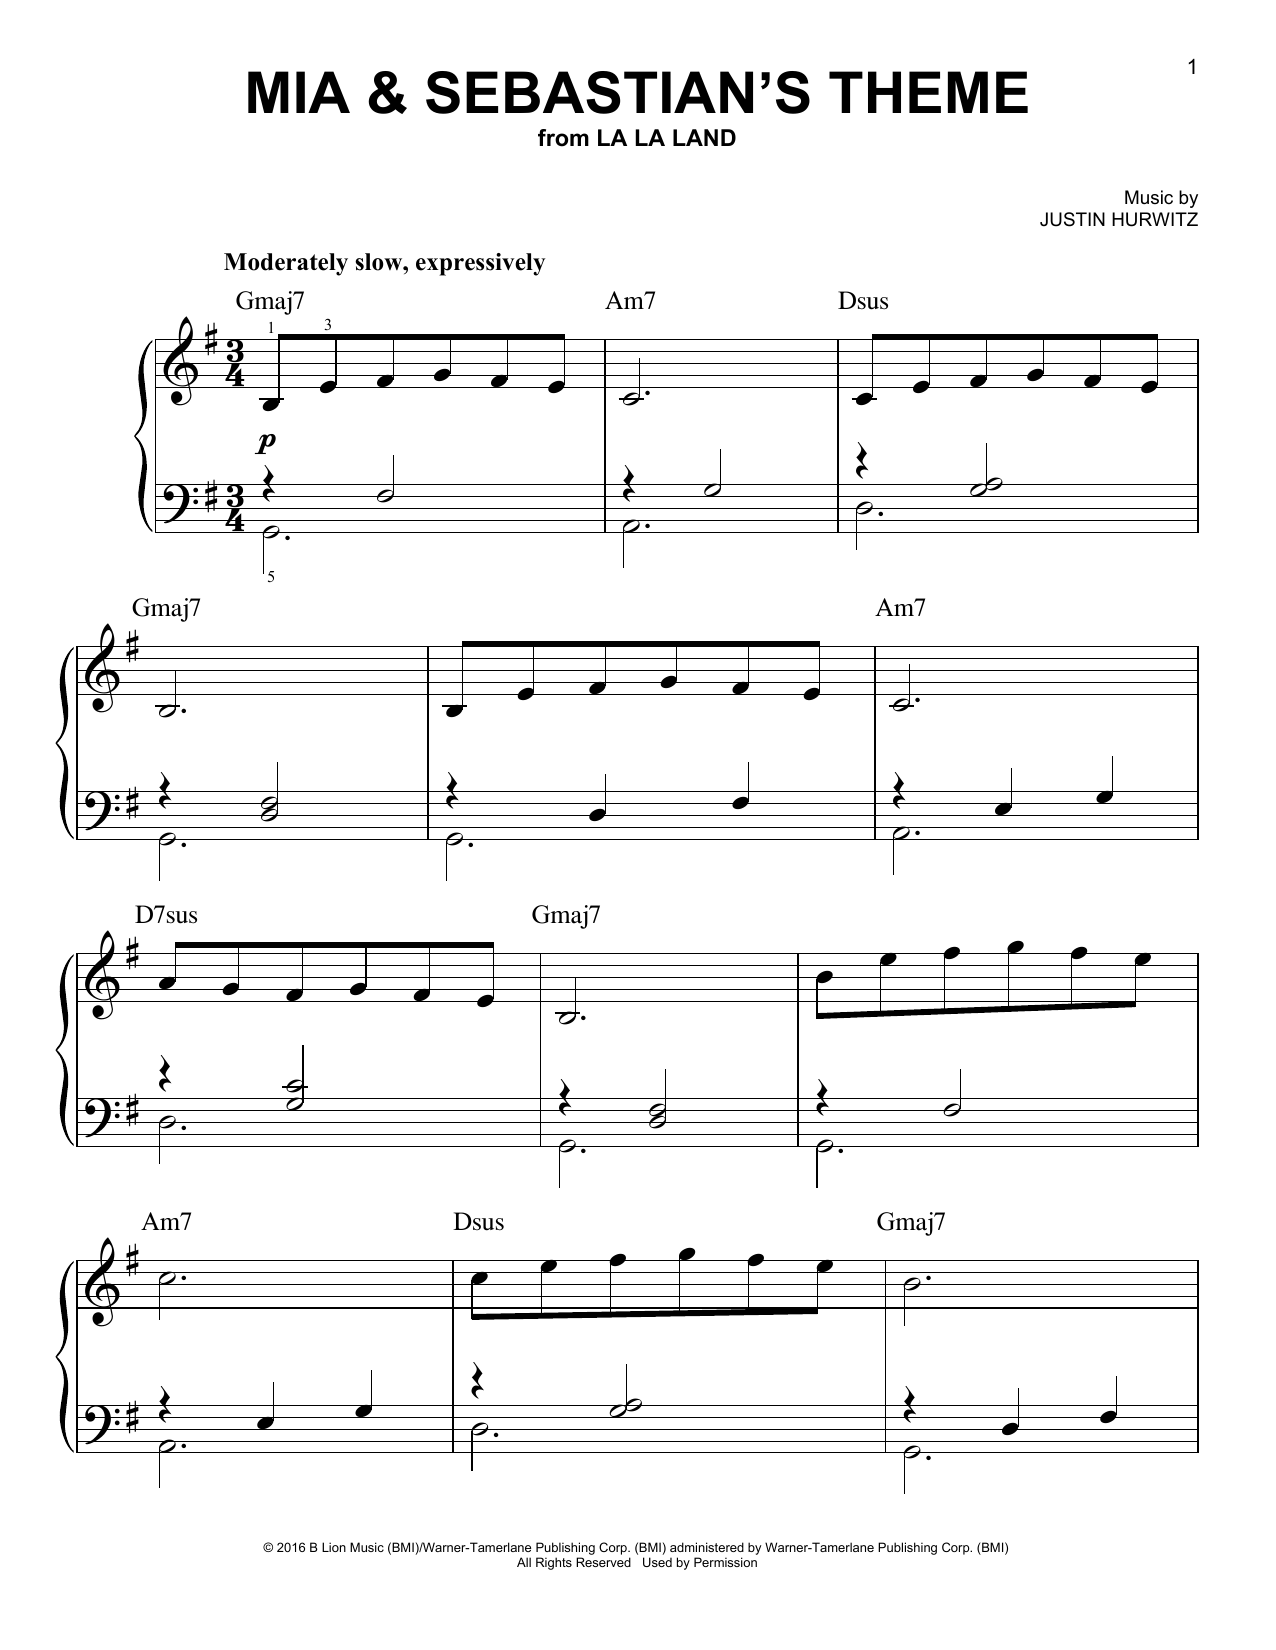 Justin Hurwitz Mia & Sebastian's Theme (from La La Land) sheet music notes printable PDF score